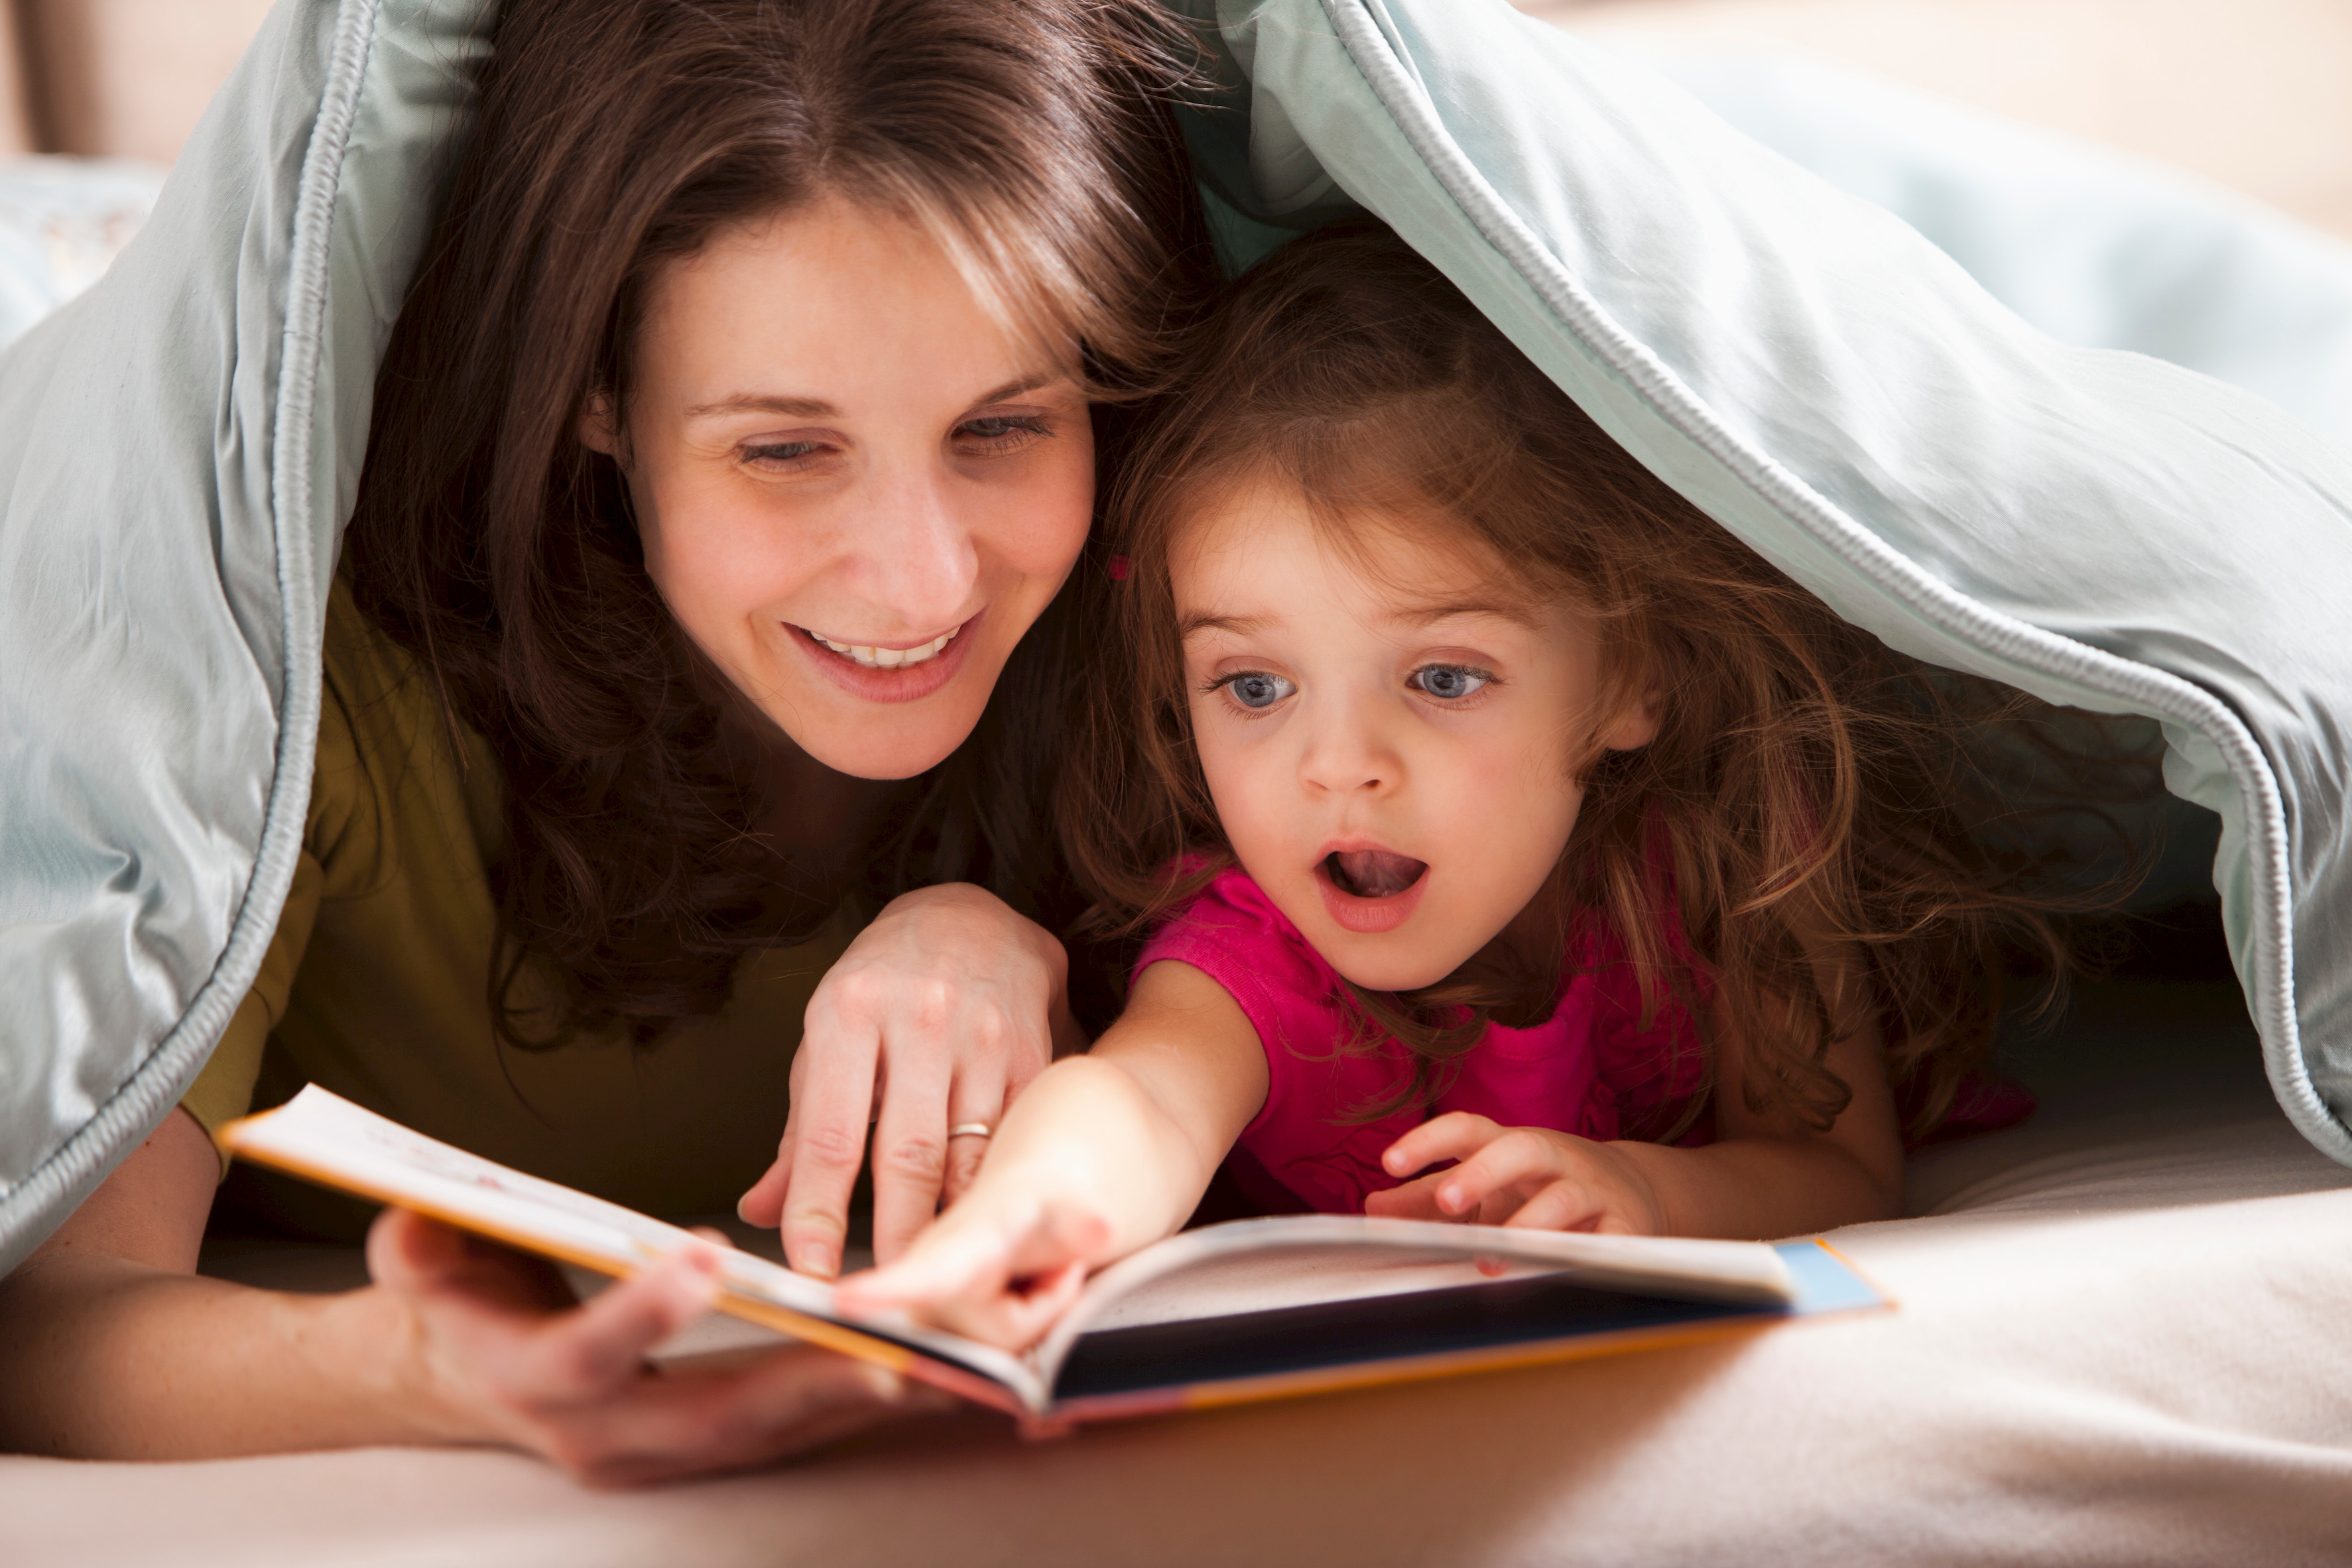 Ребенок для бывшей читать книги